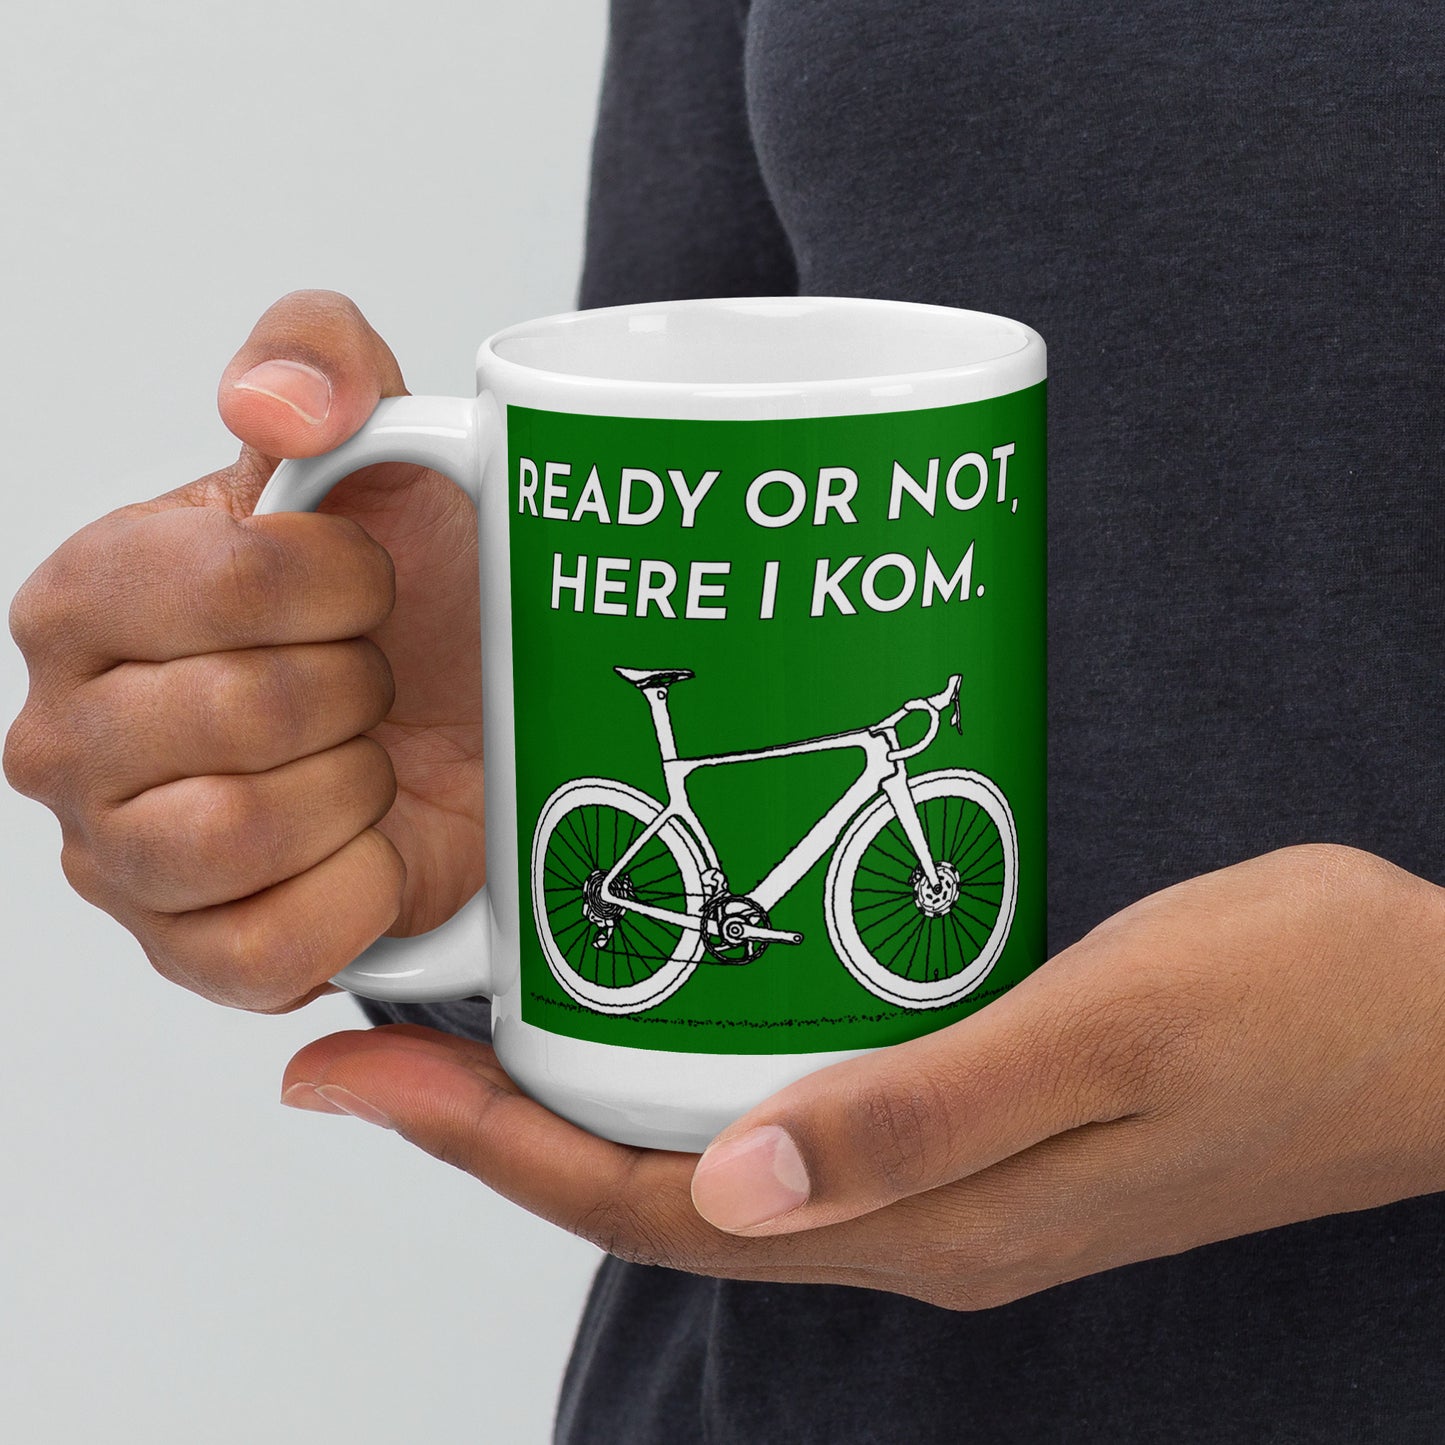 Ready Or Not Here I KOM, Green Road Bike Mug M074